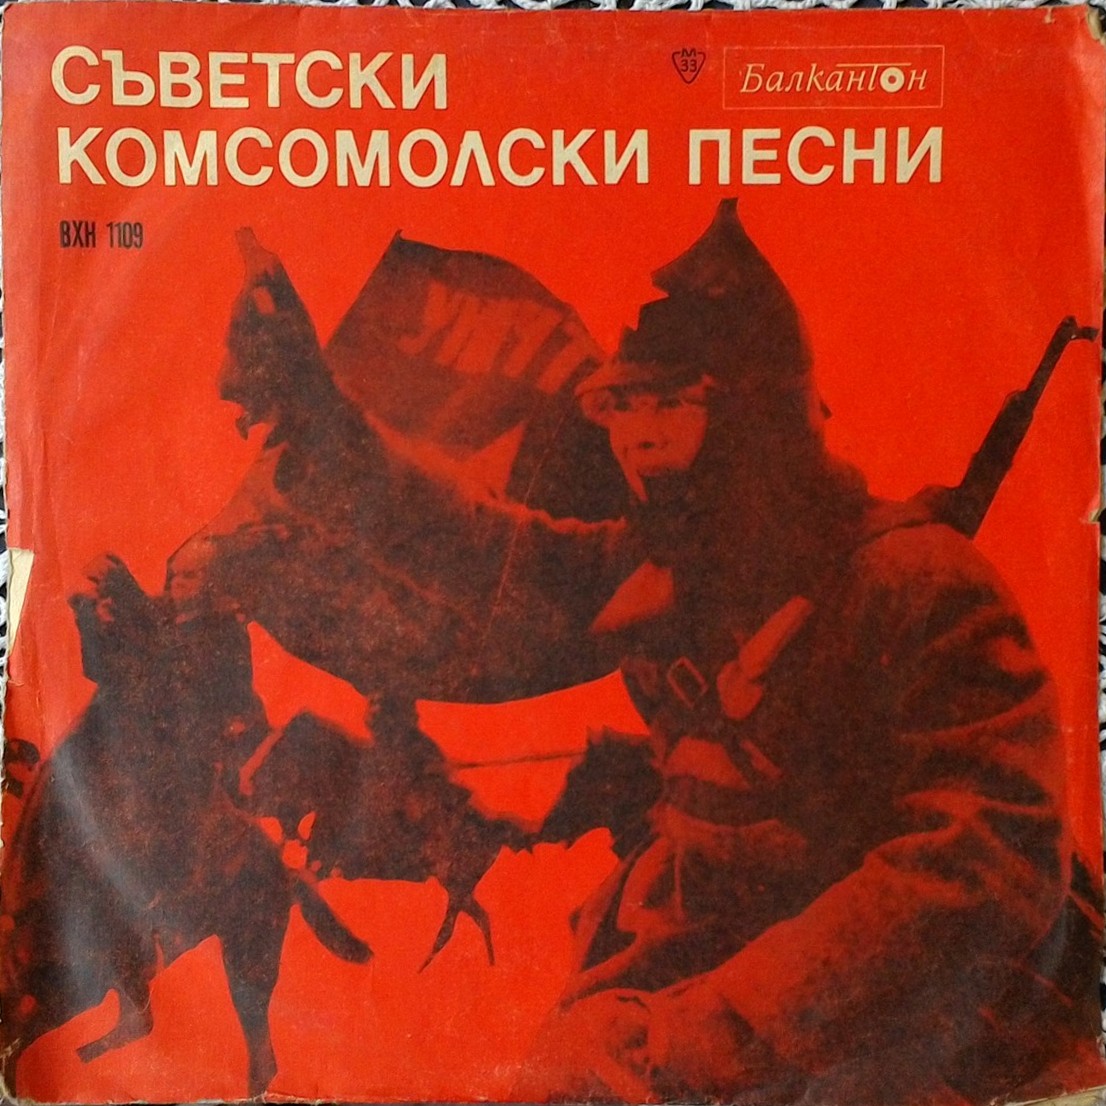 Съветски комсомолски песни